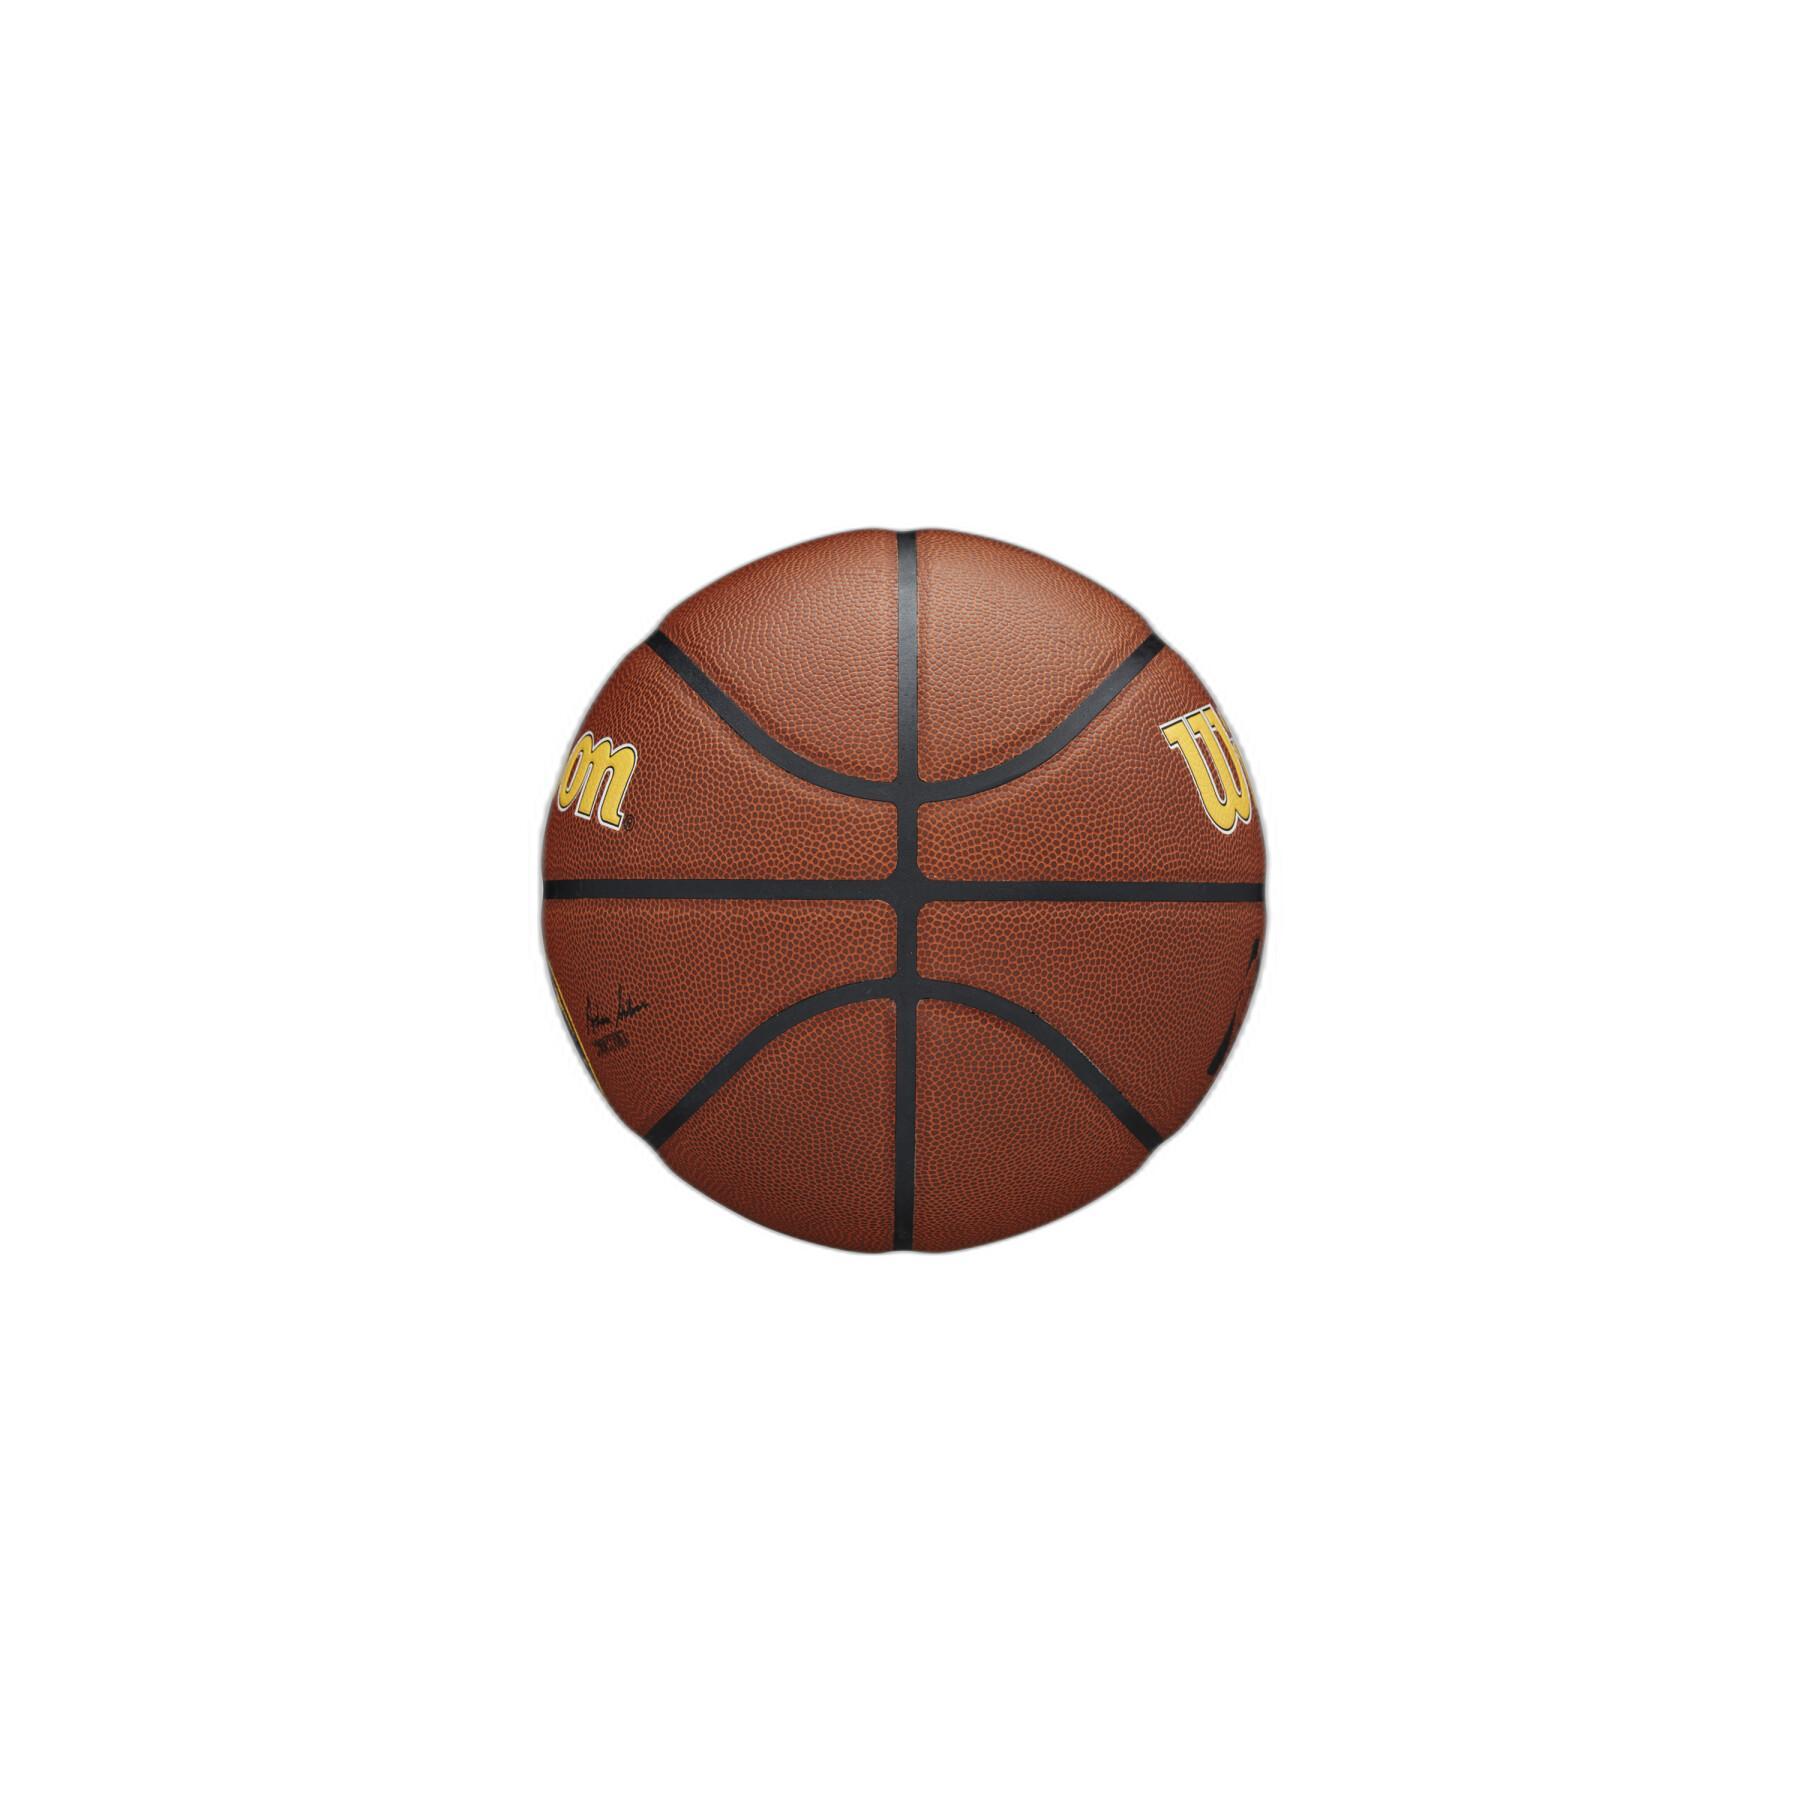 Balón Denver Nuggets NBA Team Alliance